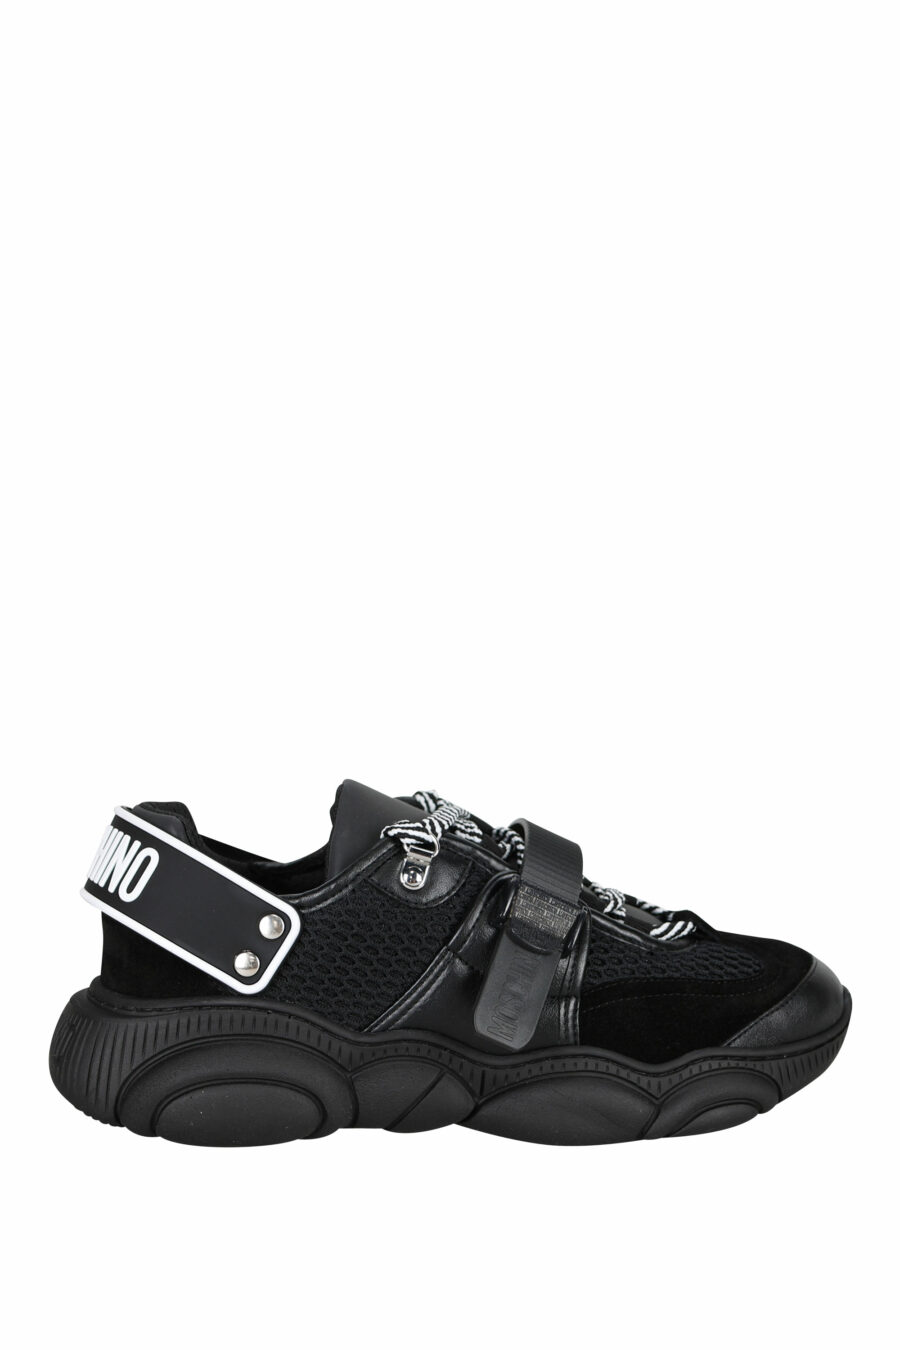 Zapatillas negras con cordones y velcro y logo de goma - 8054653226388